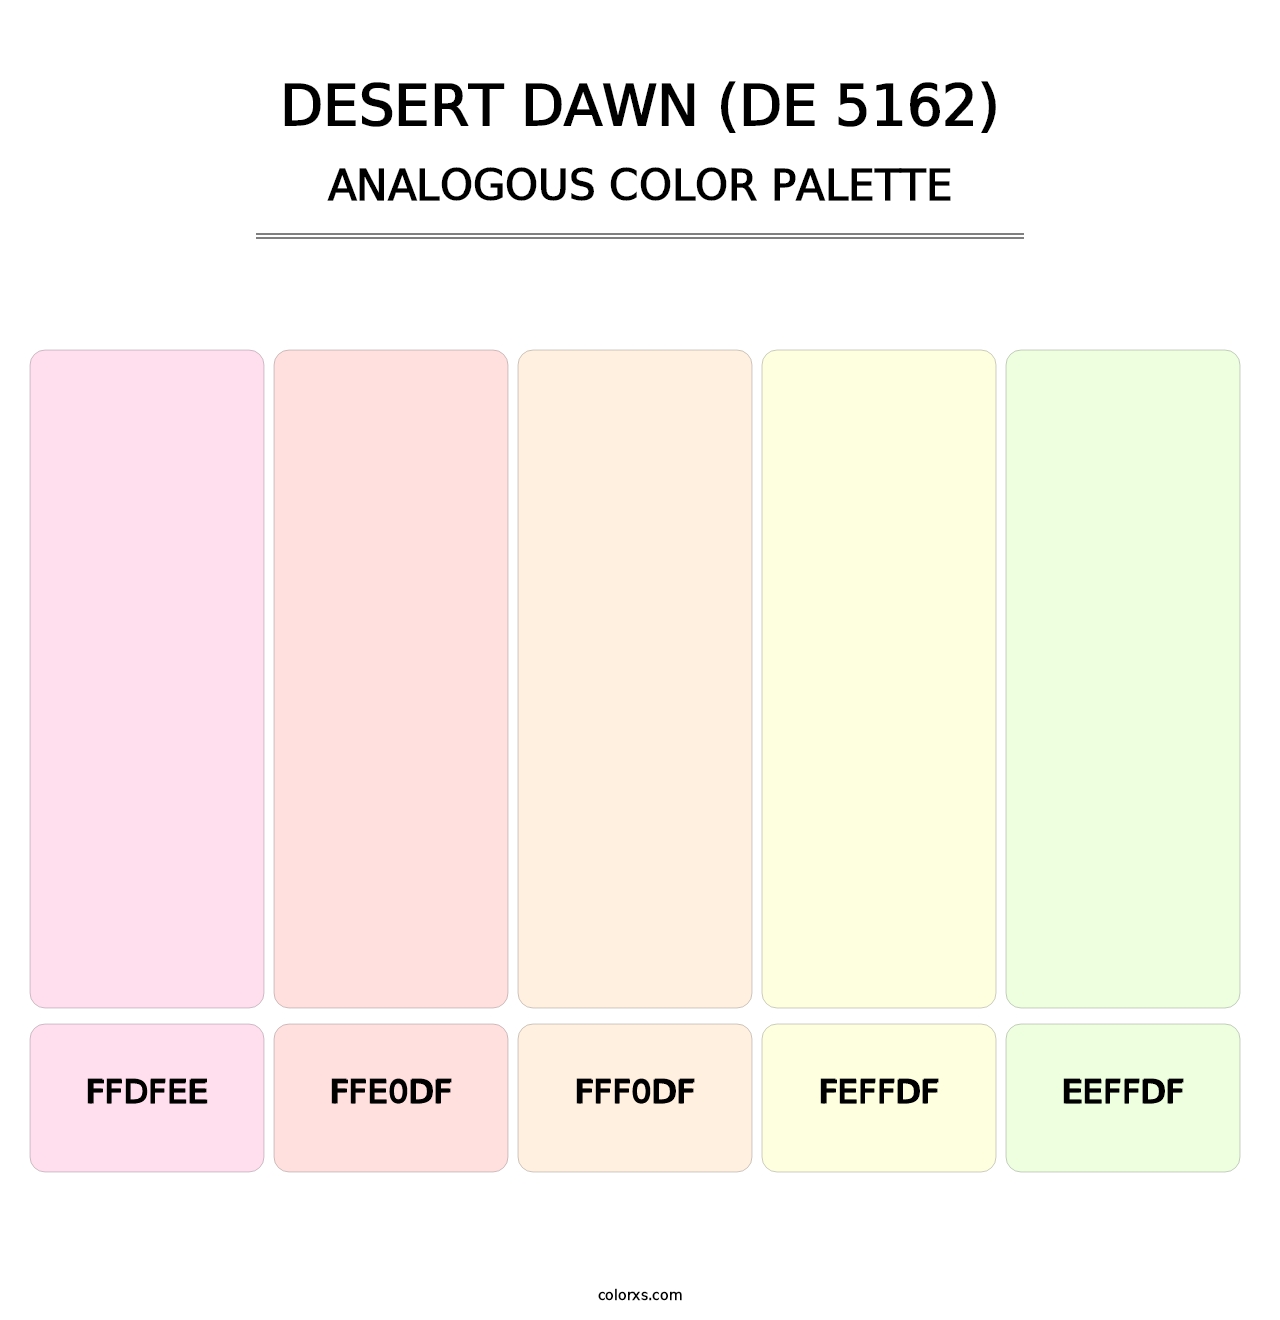 Desert Dawn (DE 5162) - Analogous Color Palette